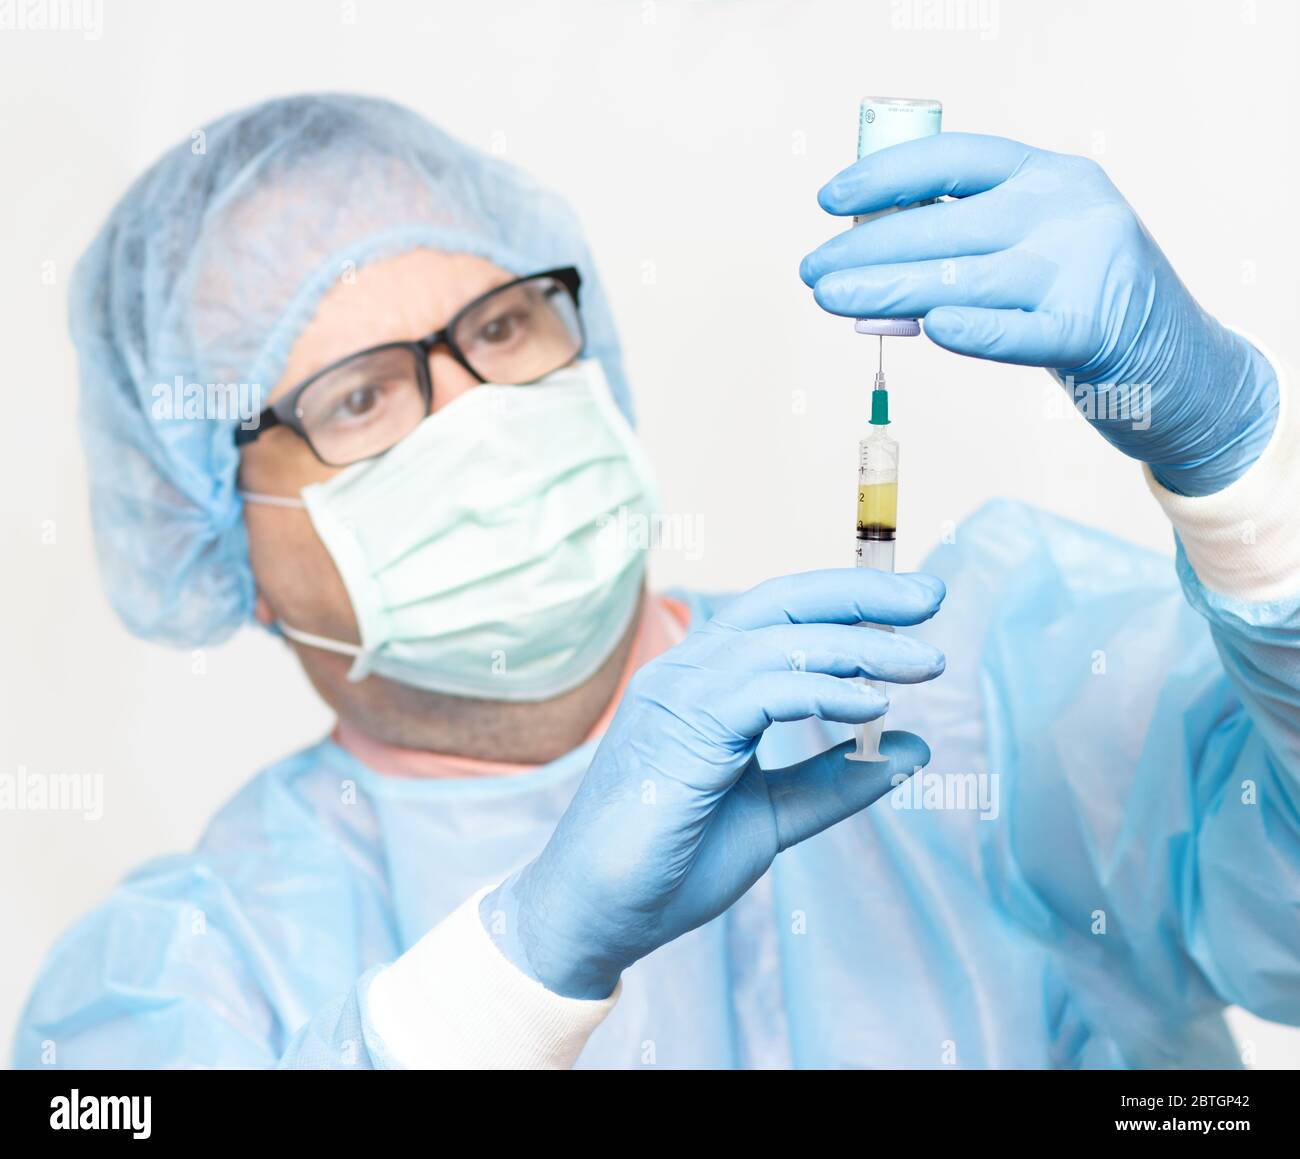 Le médecin prend le médicament d'une bouteille à une injection, se concentre sur les mains, visage flou. Scientifique tenant une seringue et un vaccin. Banque D'Images